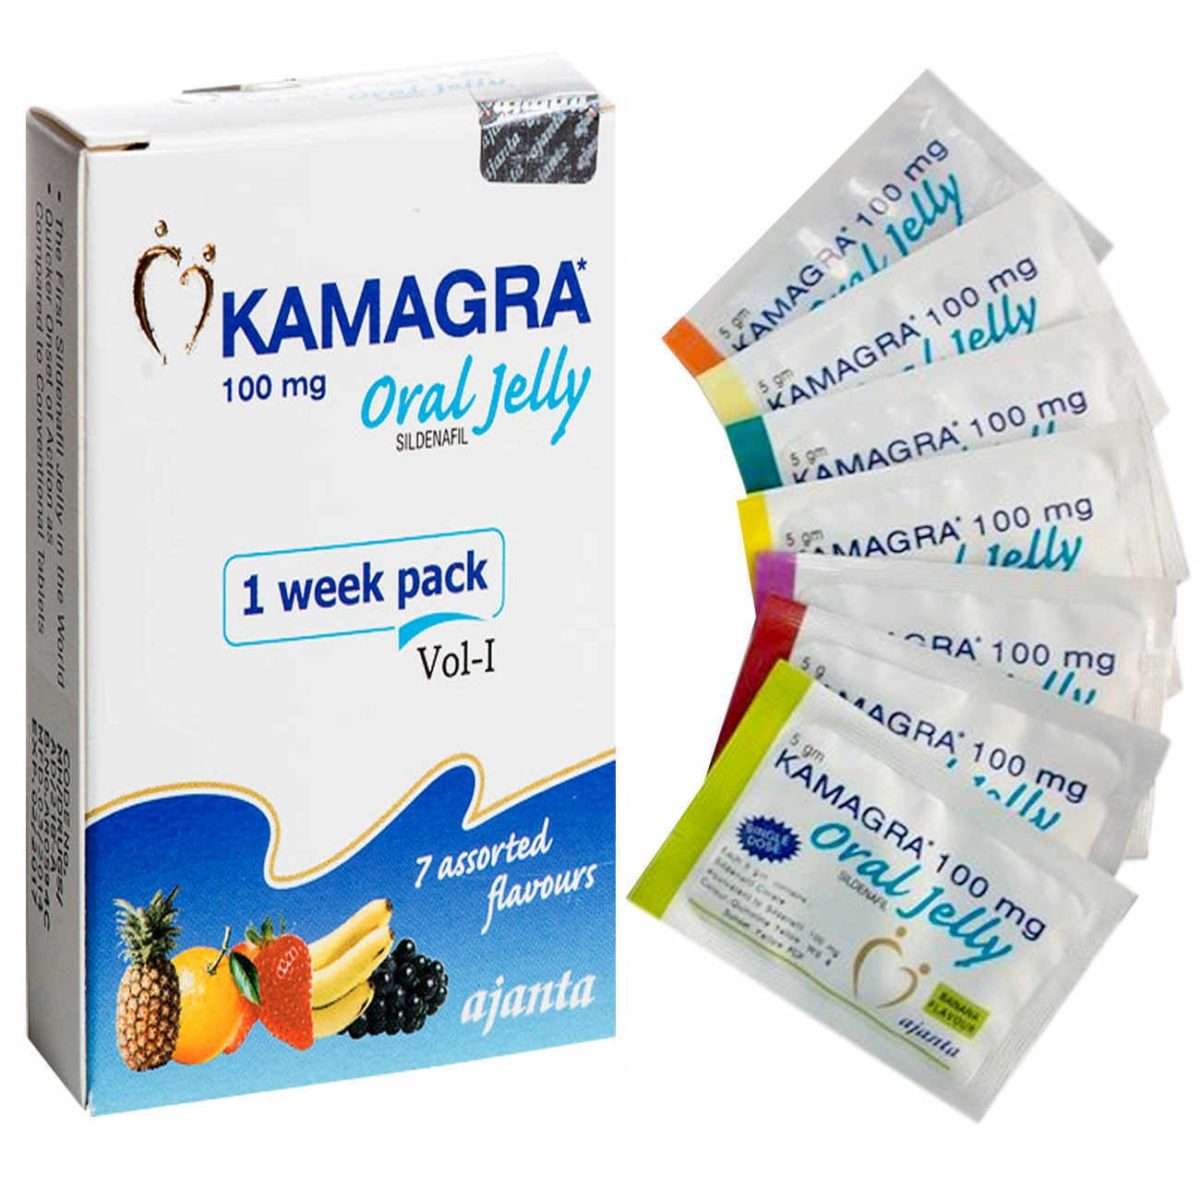 Kamagra Oral Jelly kaufen